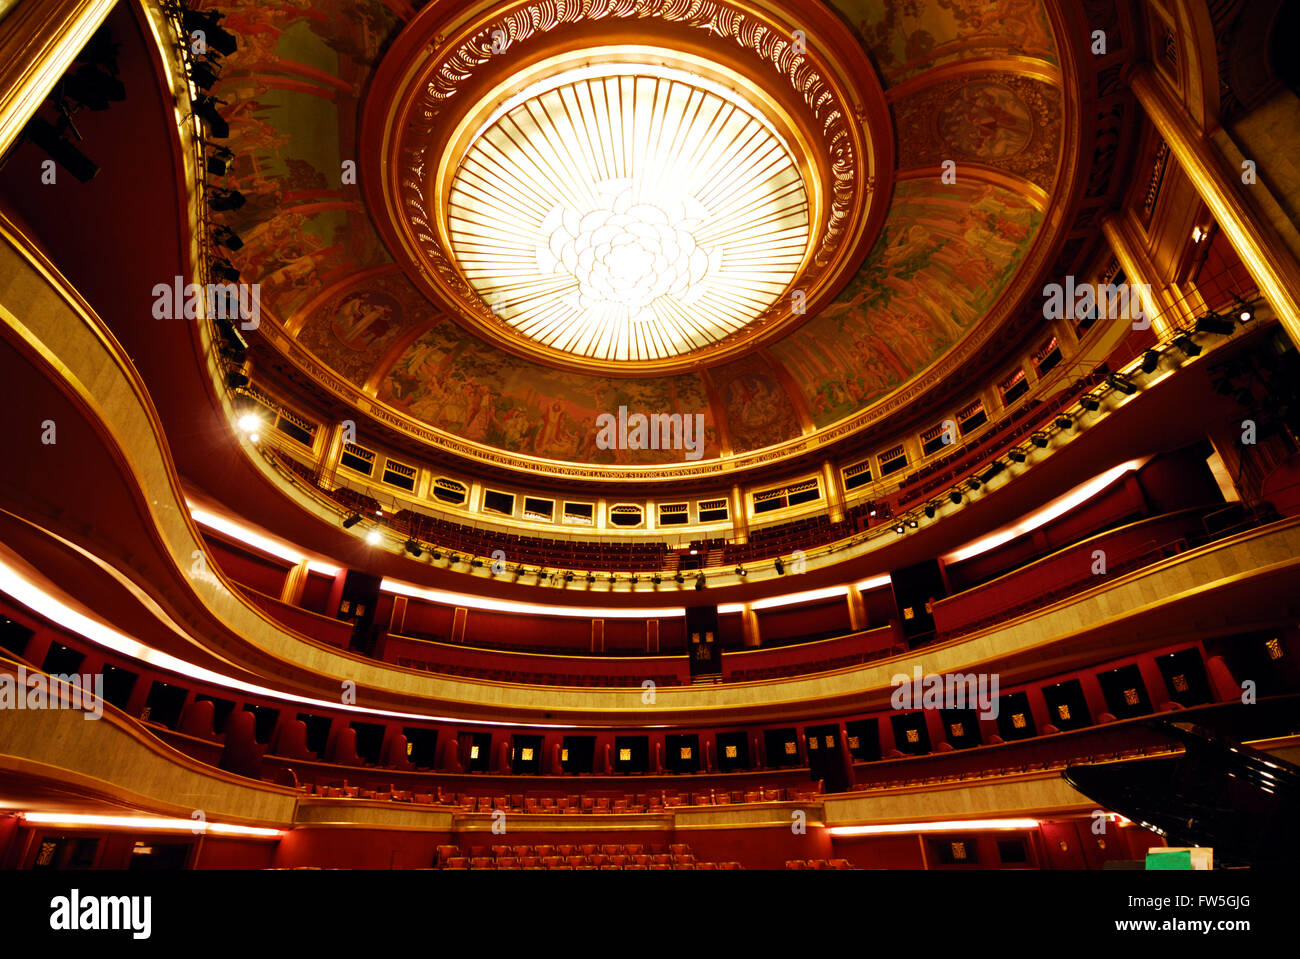 Théâtre des Champs-Élysées - Paris. Inside view of auditorium, with glass dome & organ pipes. Stock Photo